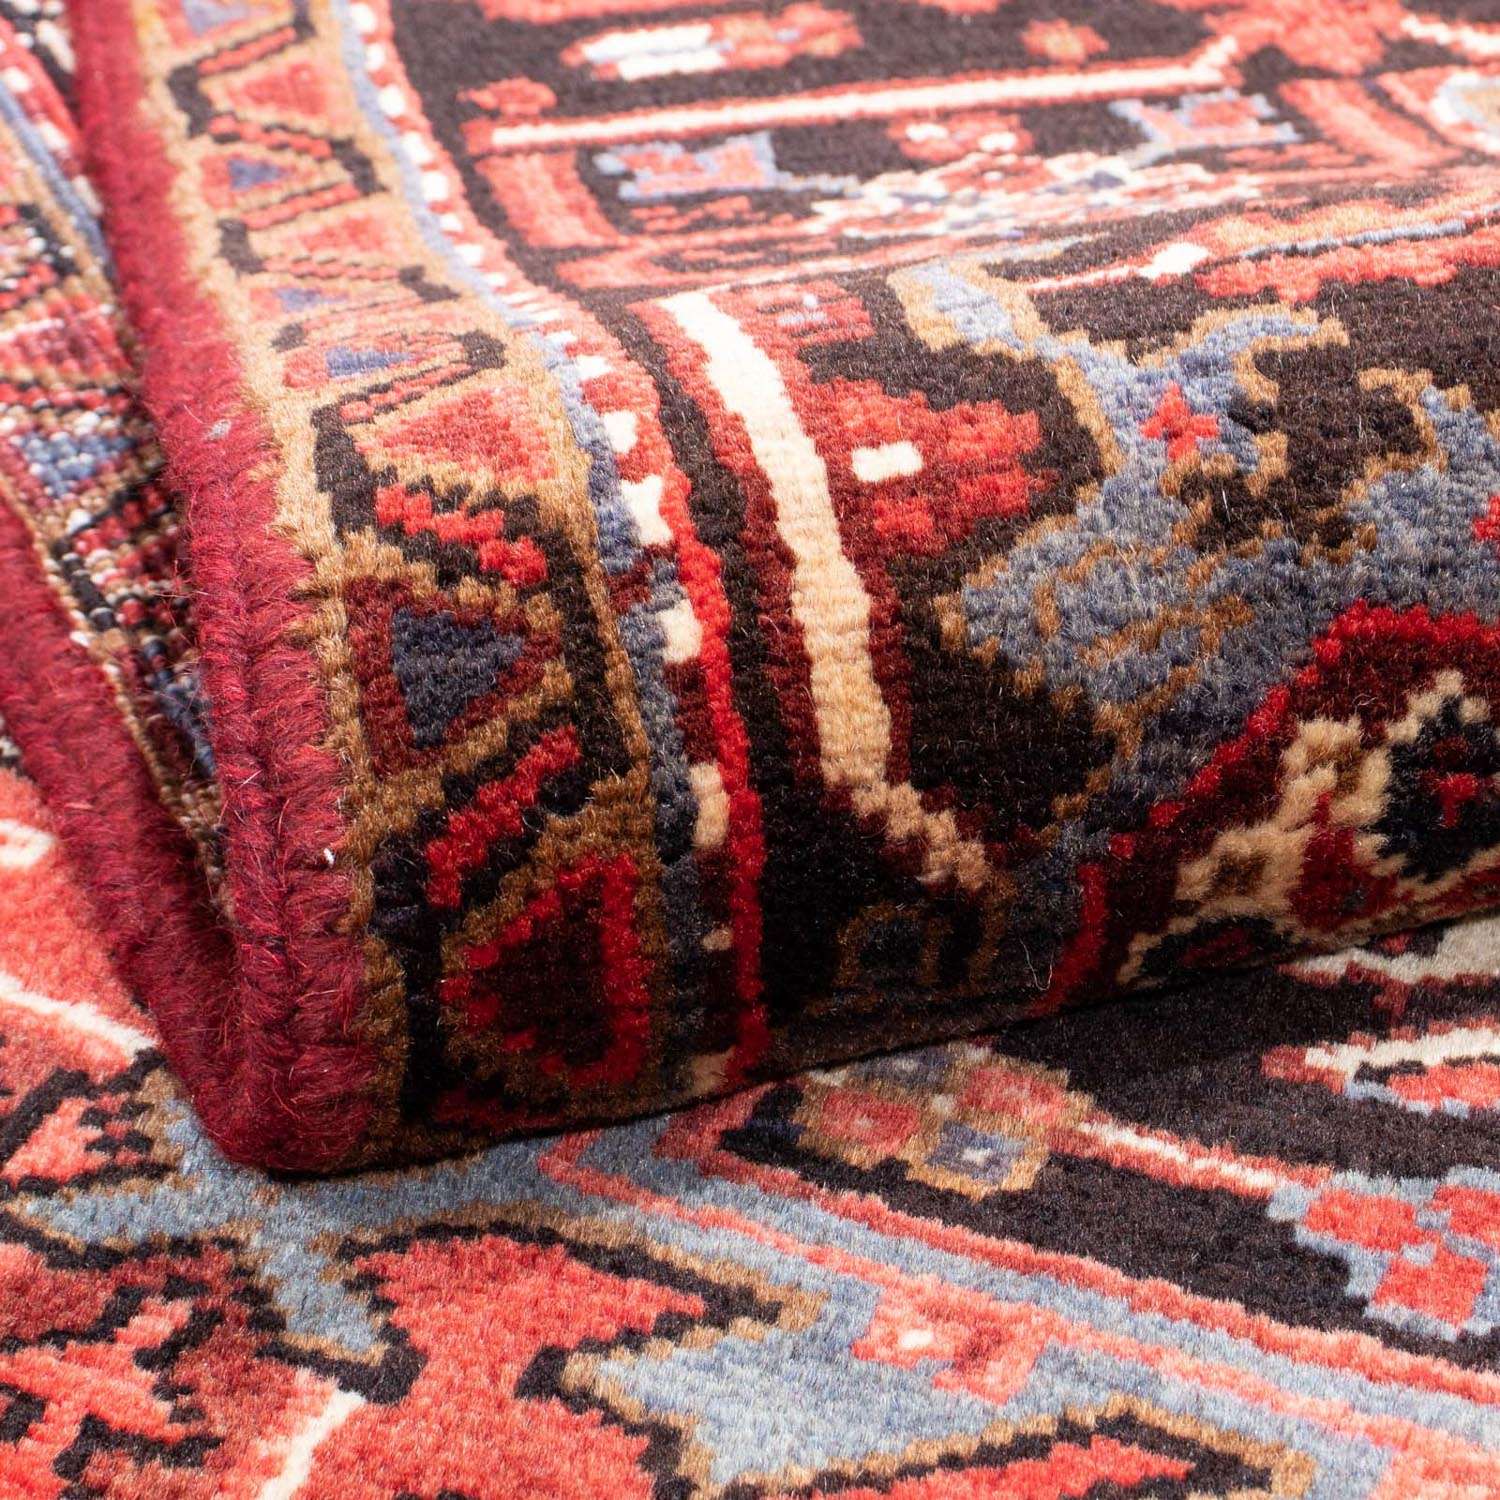 Perski dywan - Nomadyczny - 300 x 215 cm - czerwony